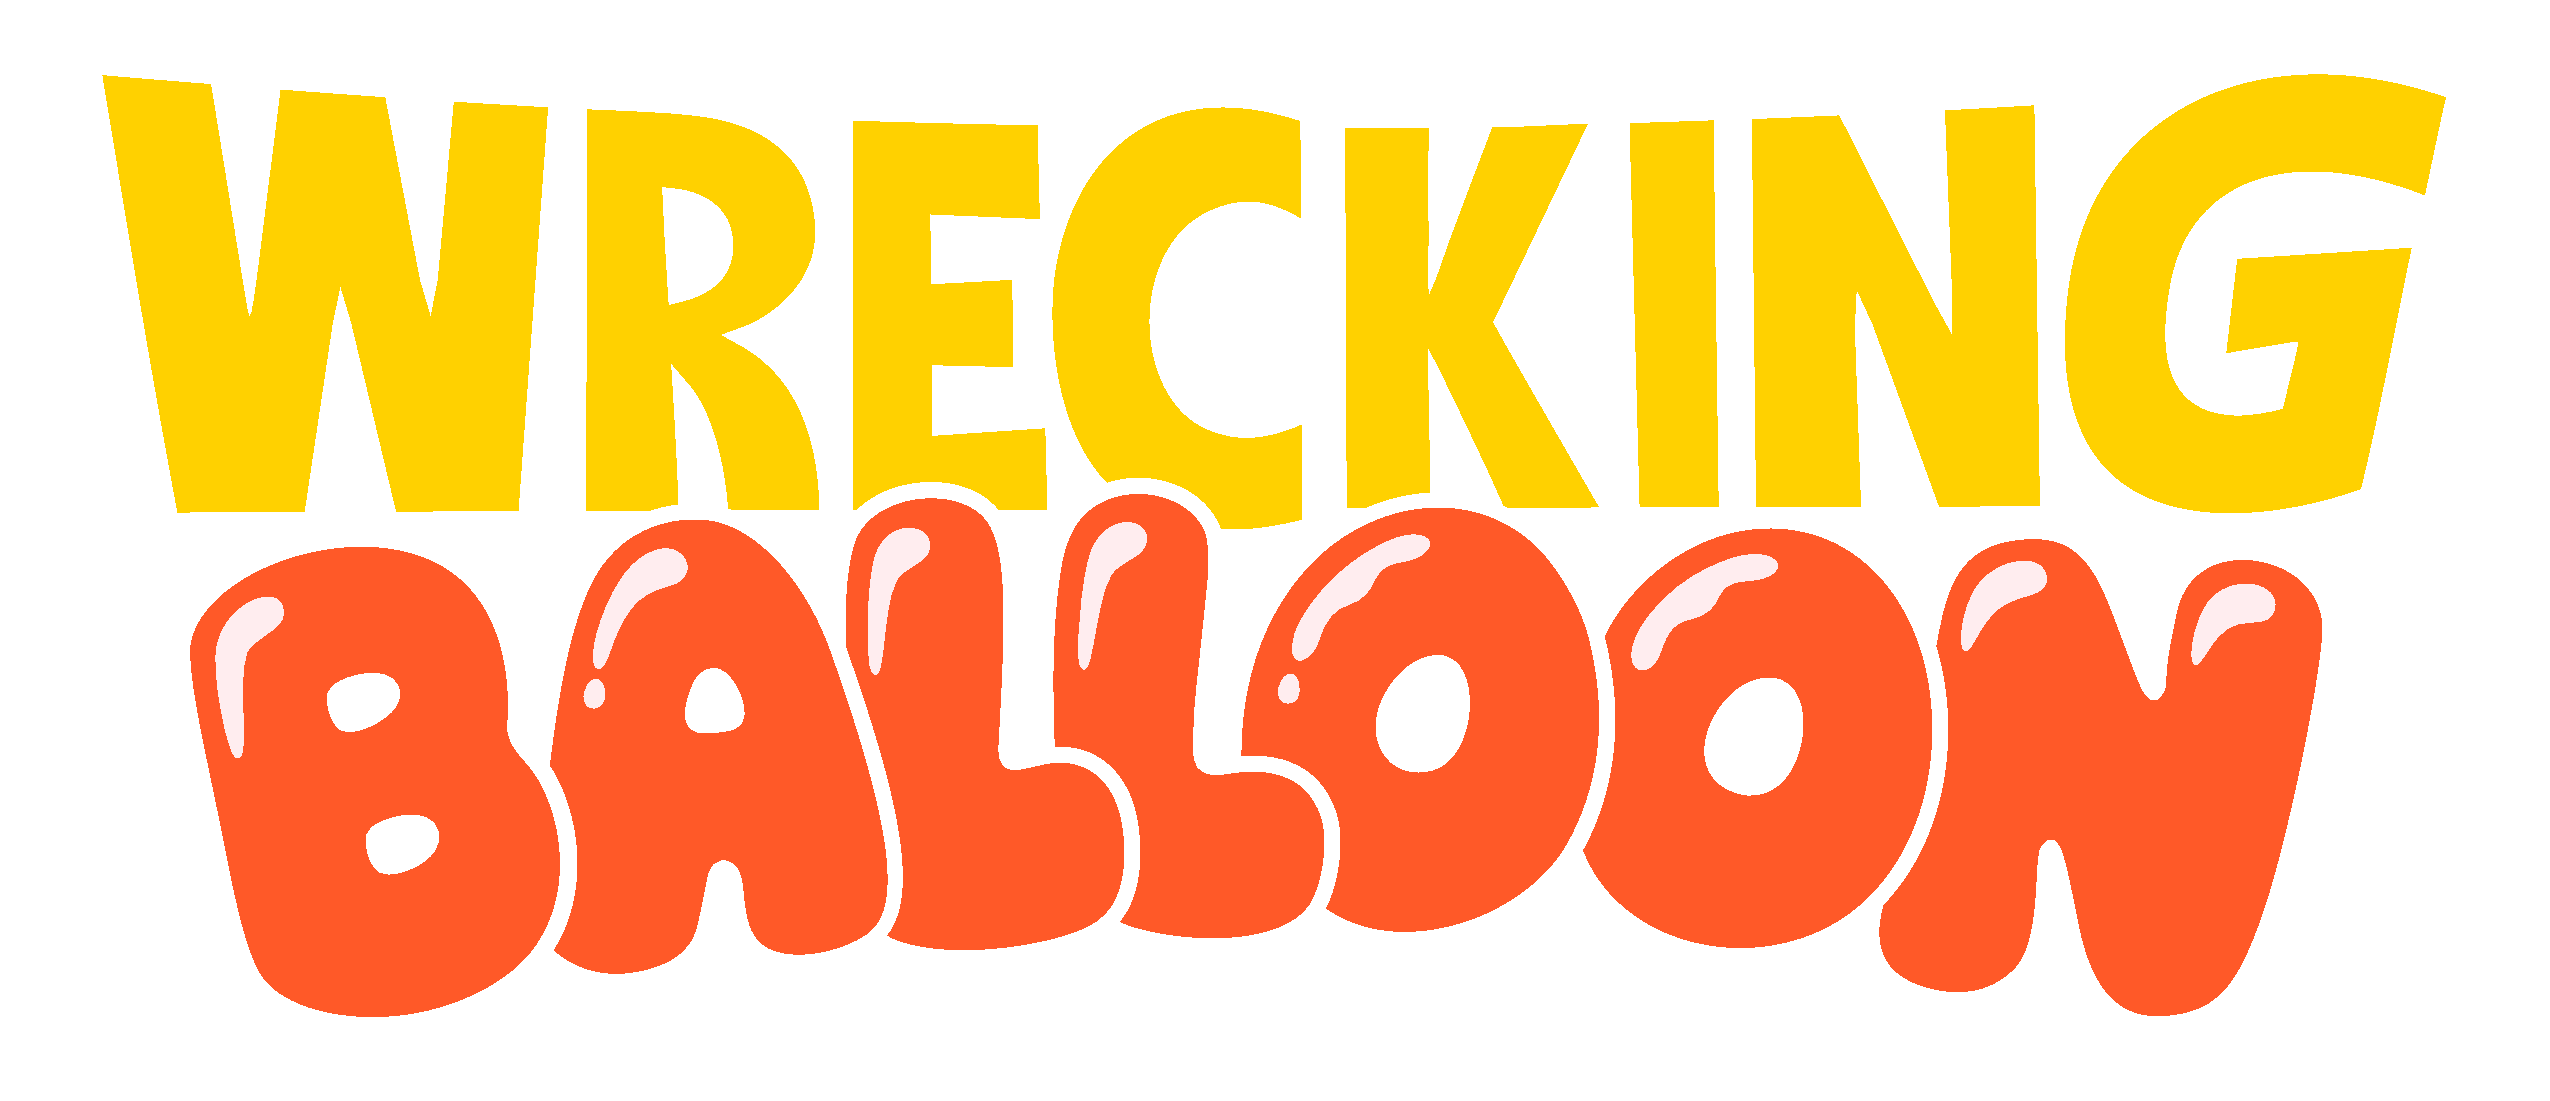 Wrecking Balloon (Game Boy)